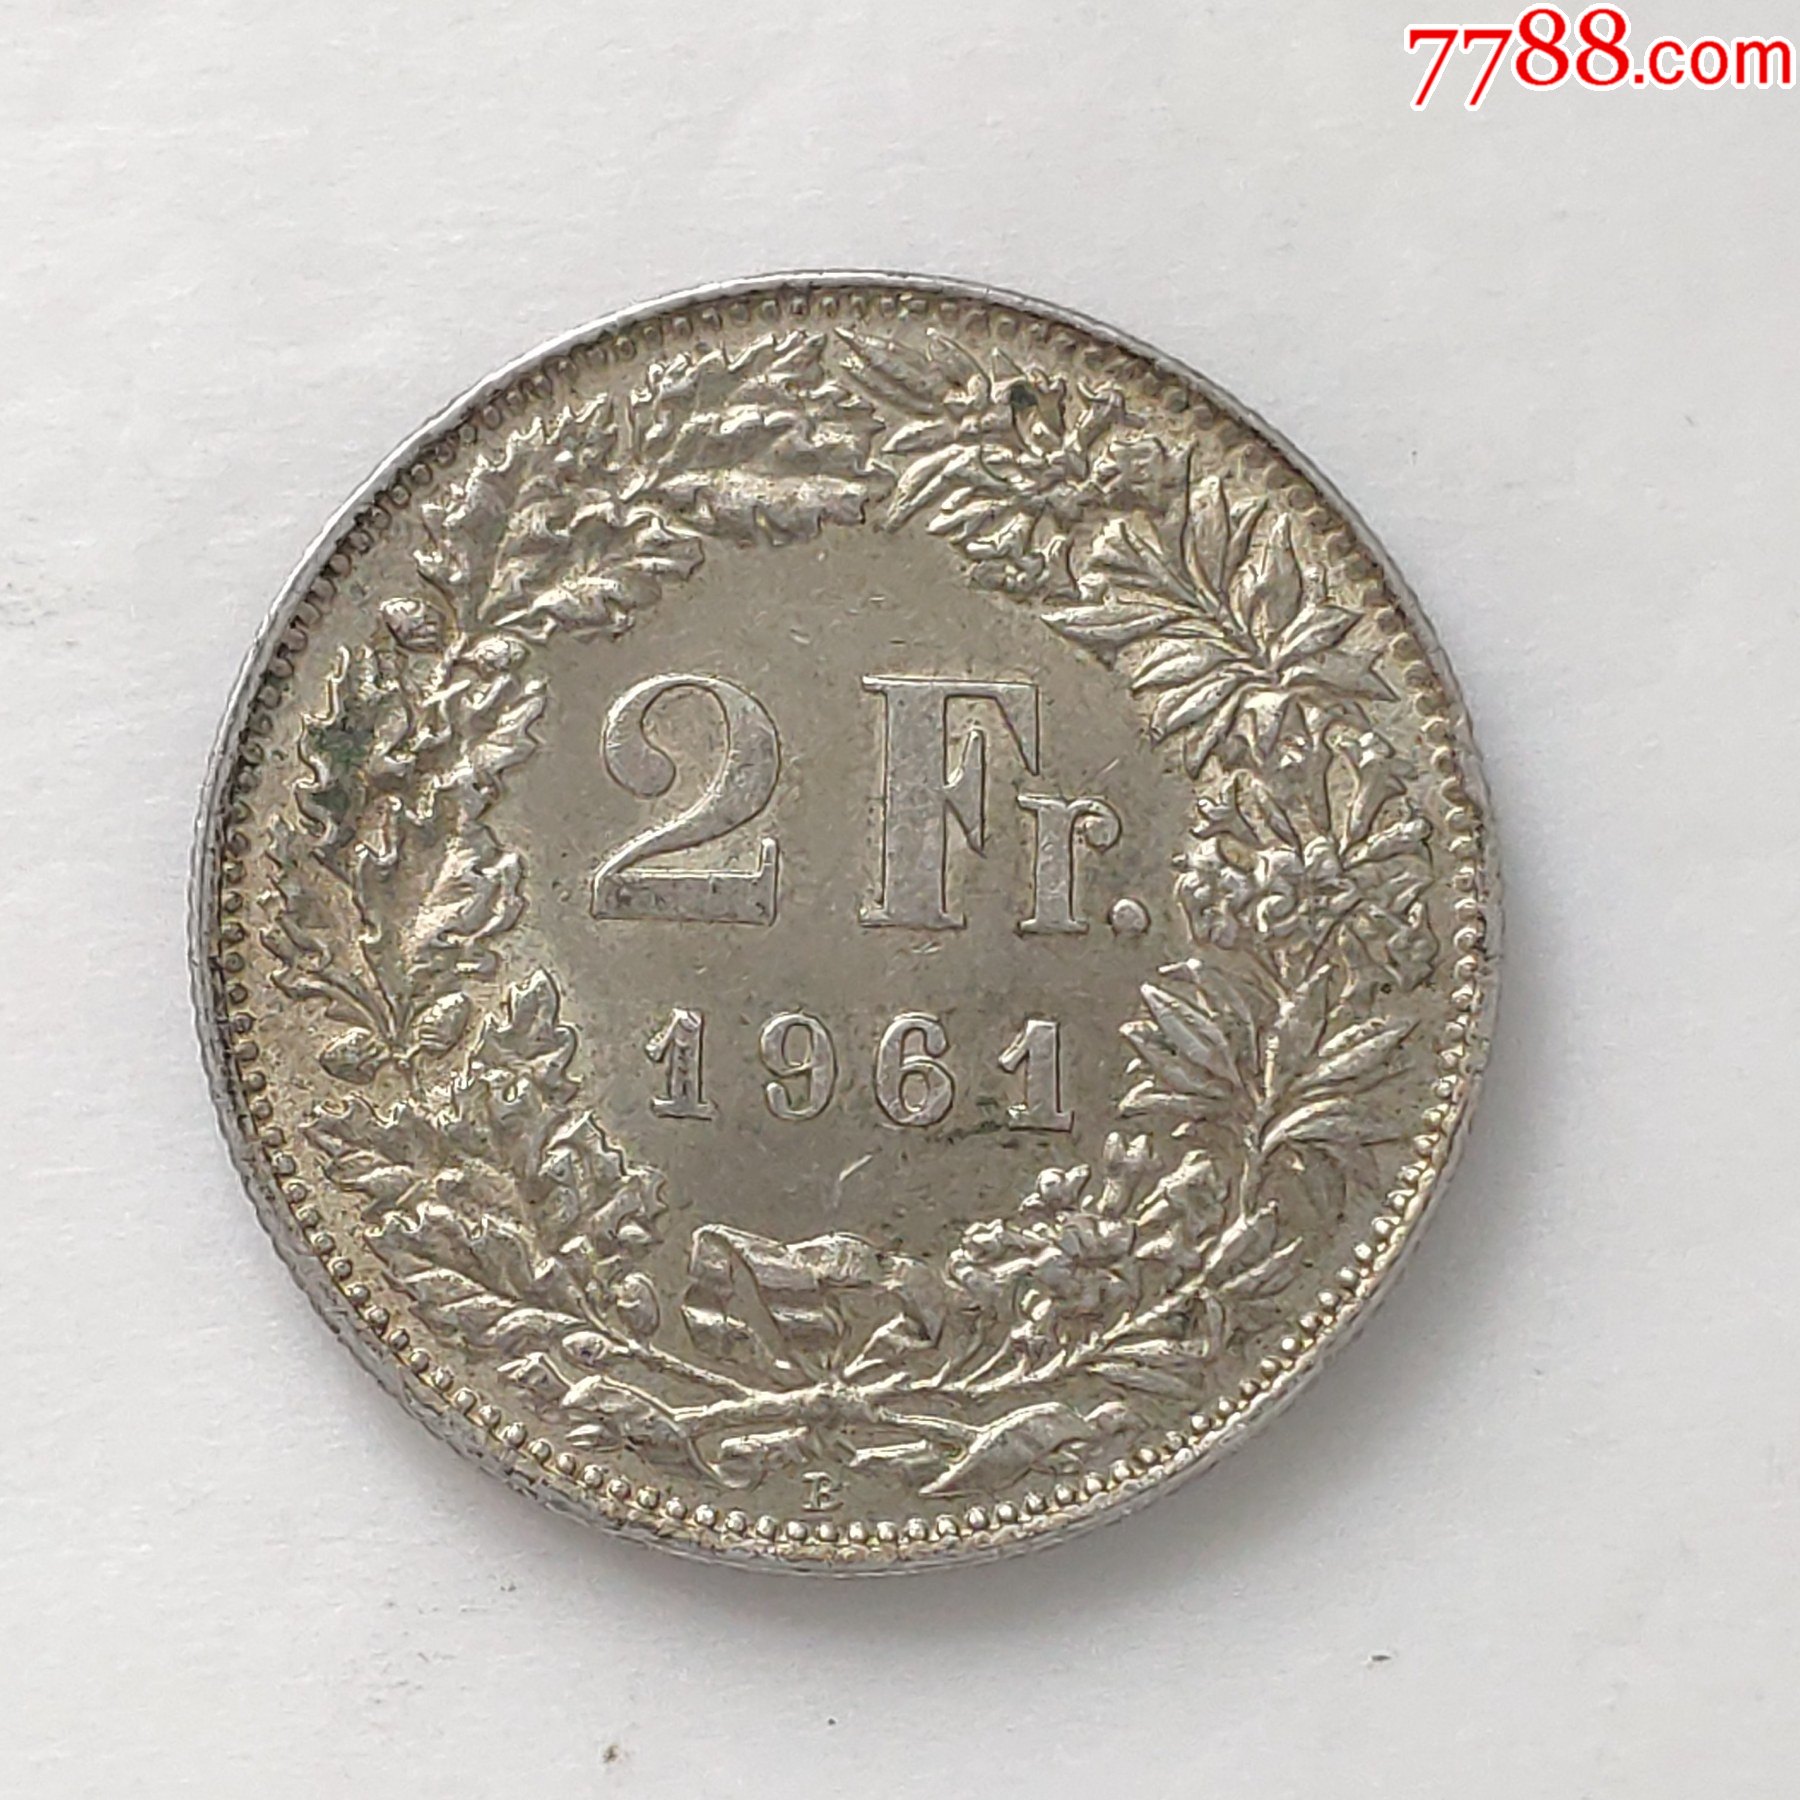 瑞士2法郎1961年全新银币